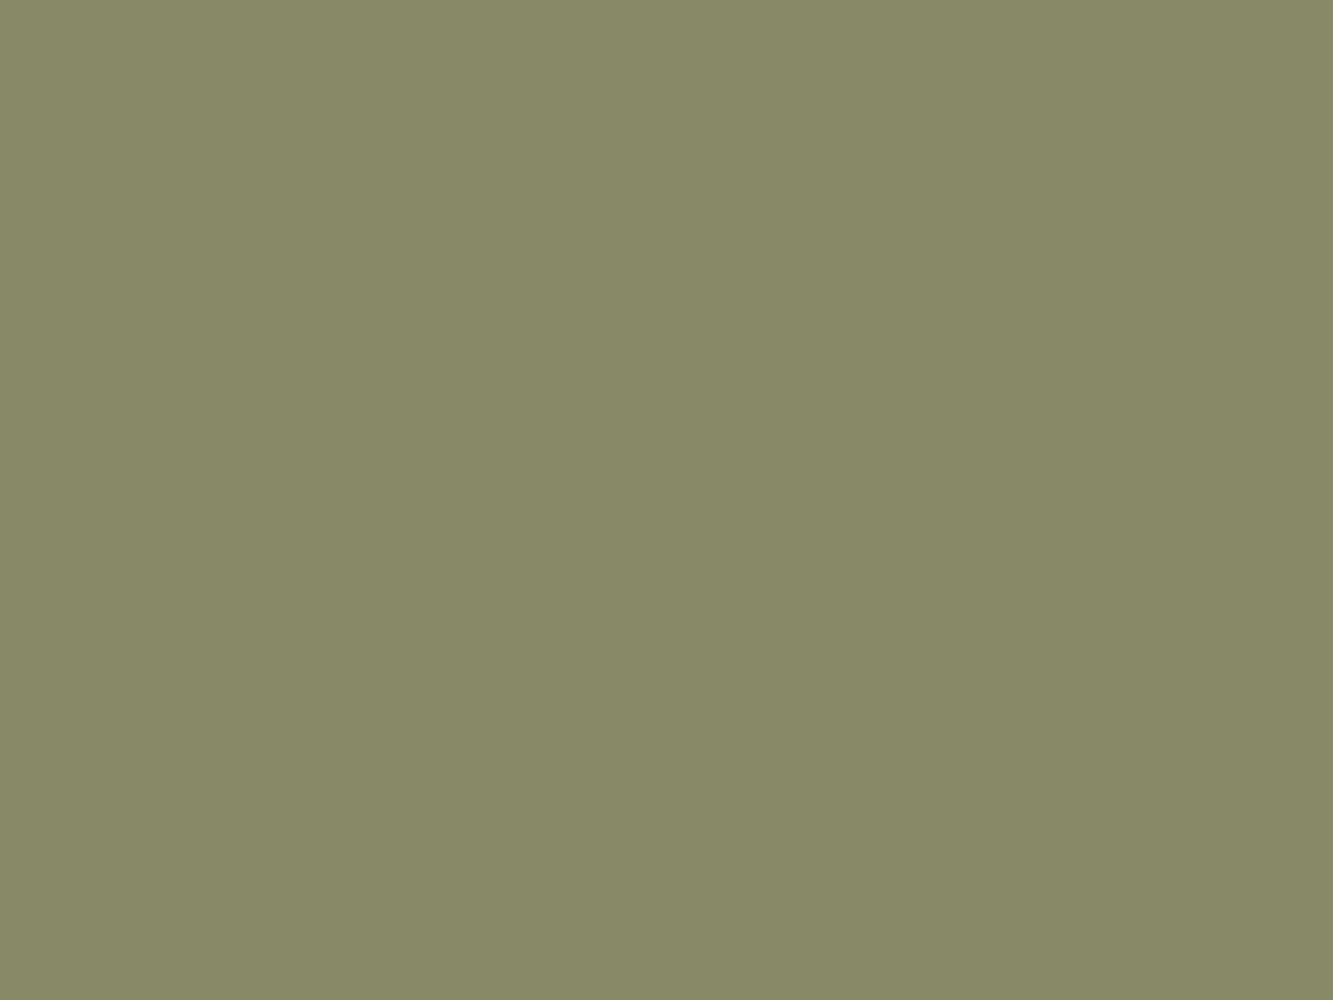 Владимир Маковский. Игра в бабки (фрагмент). 1870. Государственная Третьяковская галерея, Москва